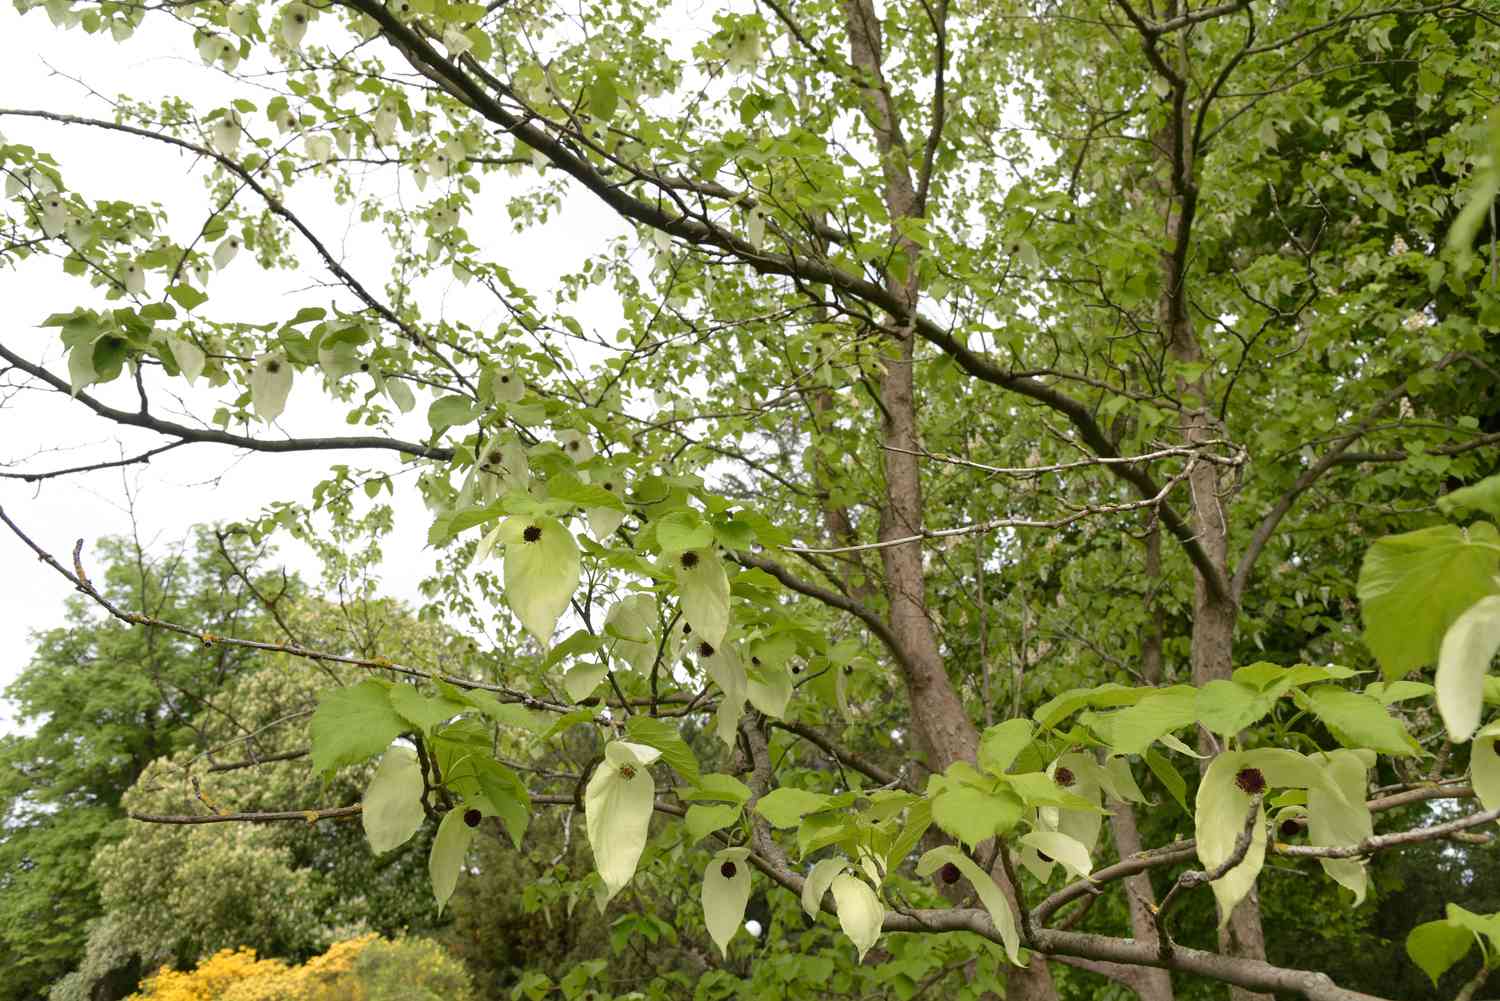 Taubenbaum mit grünen herzförmigen Blättern und weißen Hochblättern, die von kahlen, ausladenden Ästen hängen